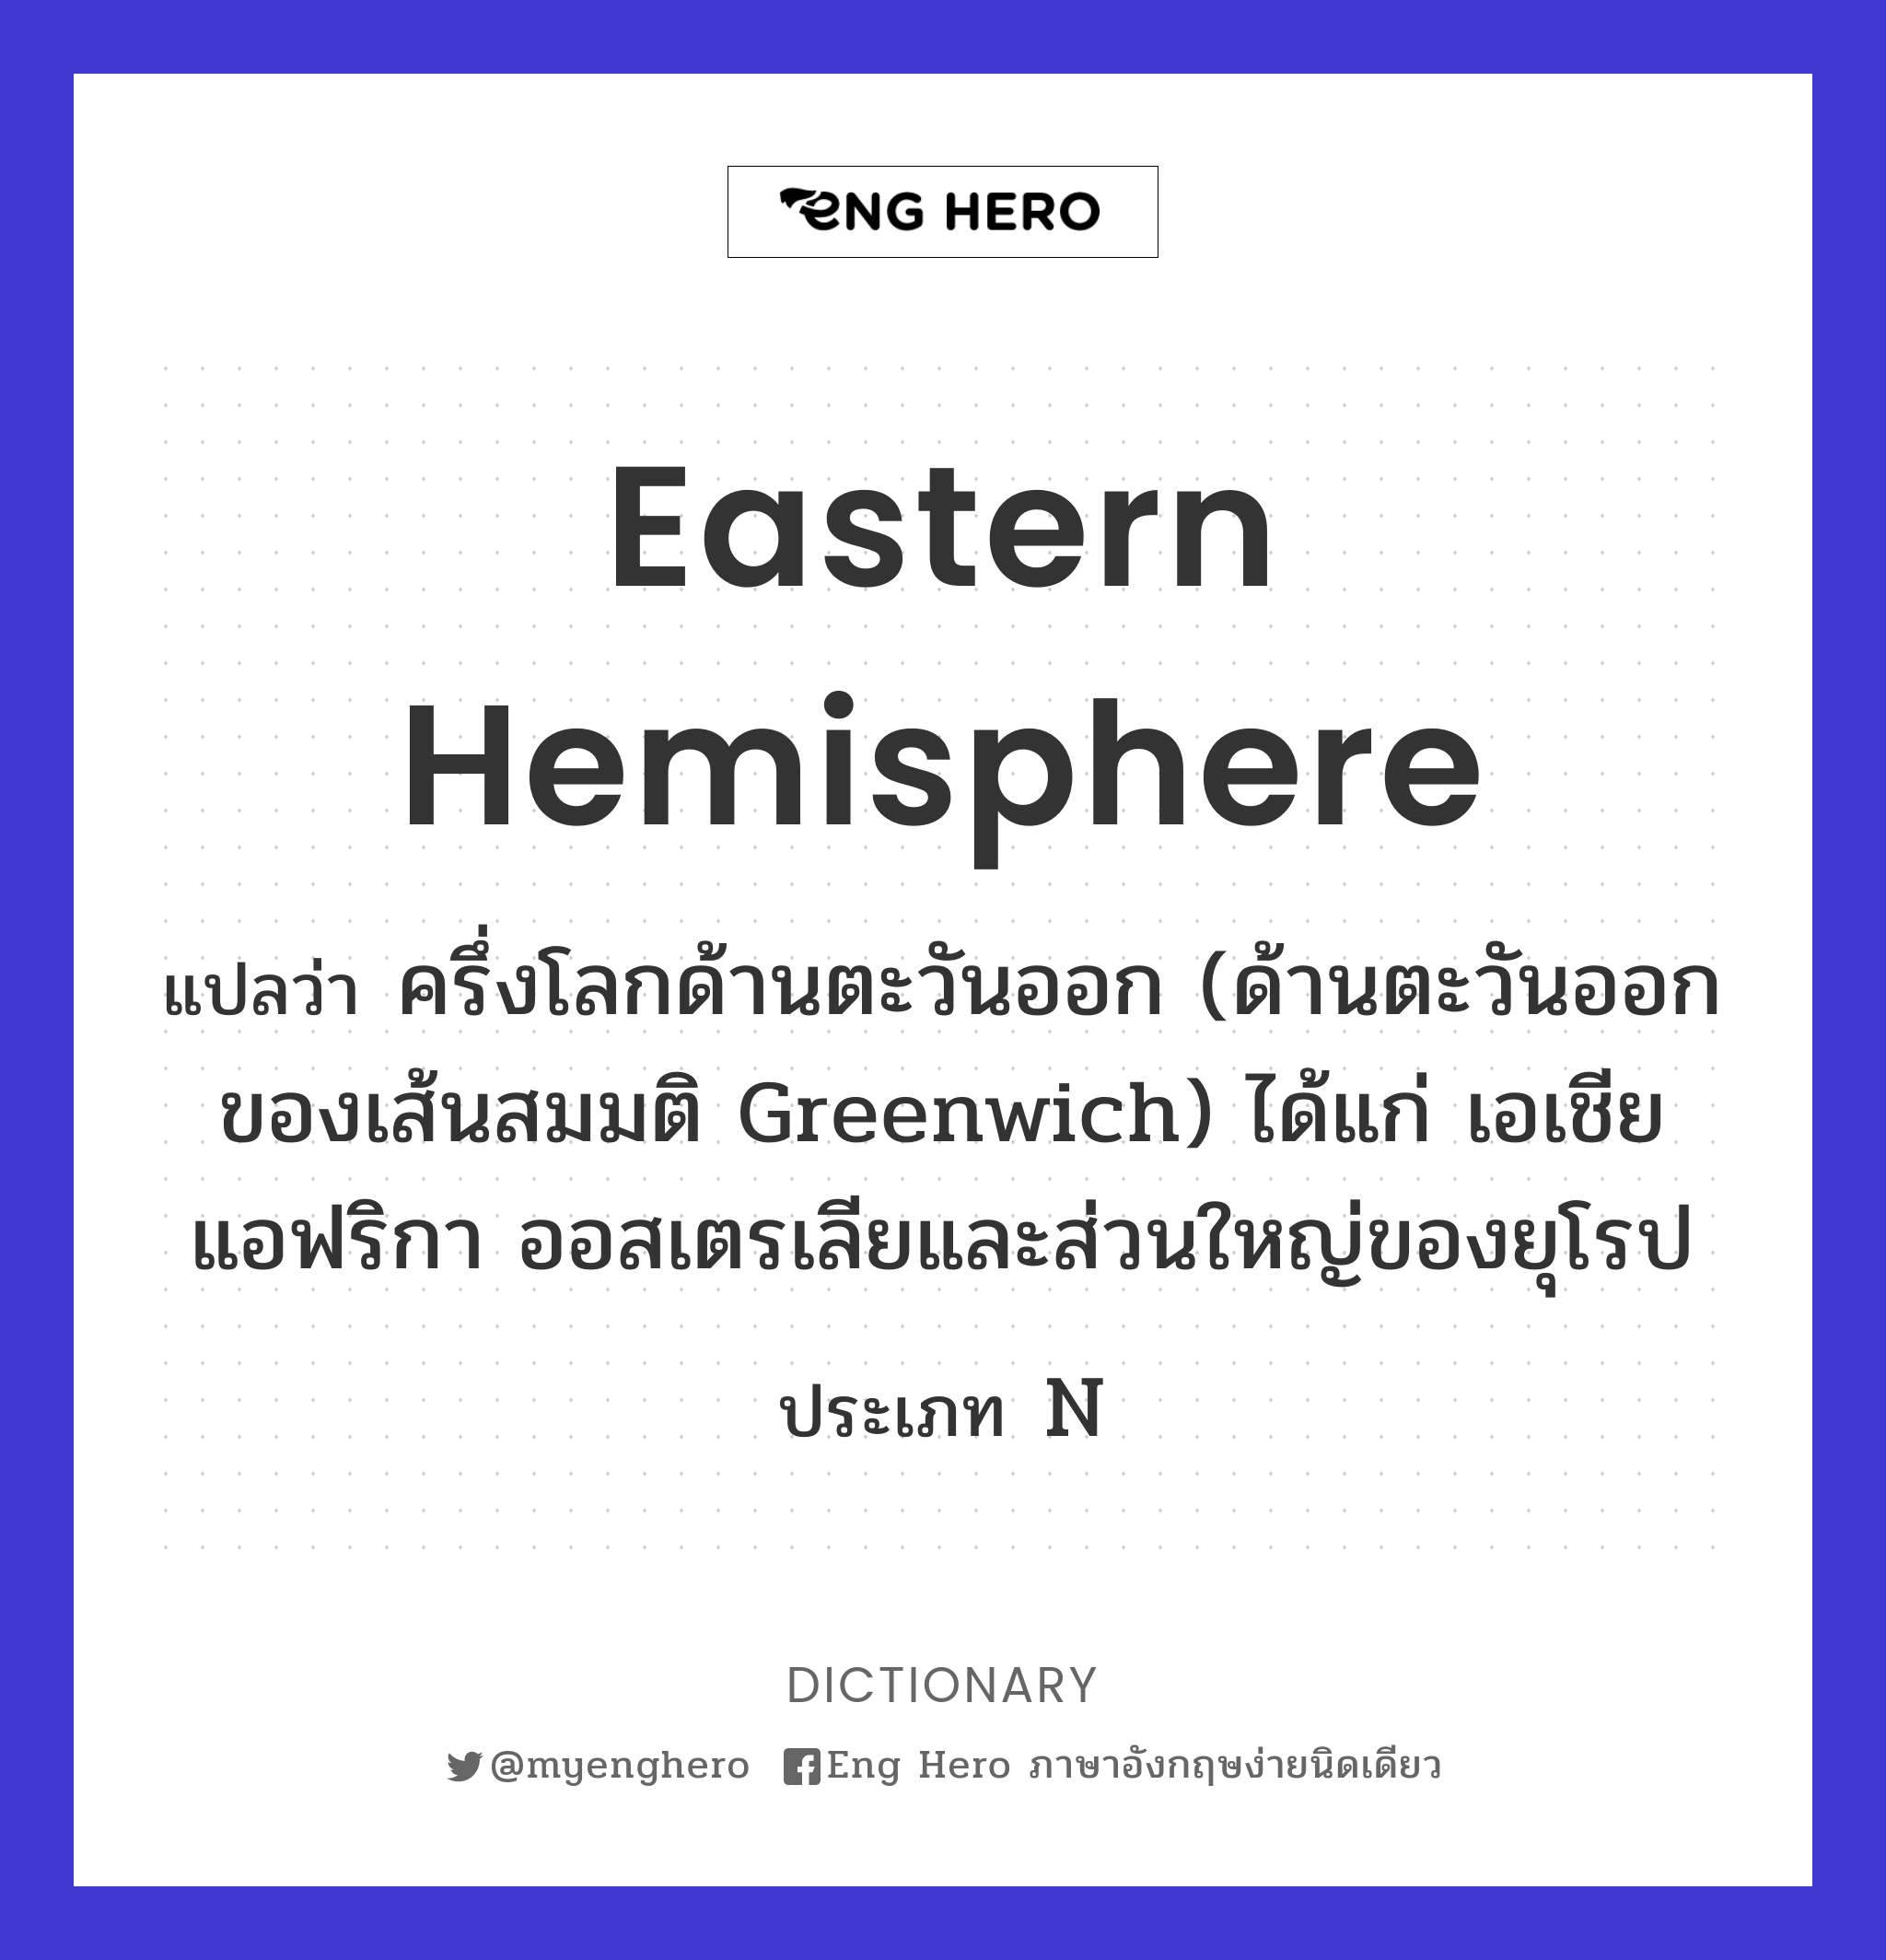 Eastern hemisphere